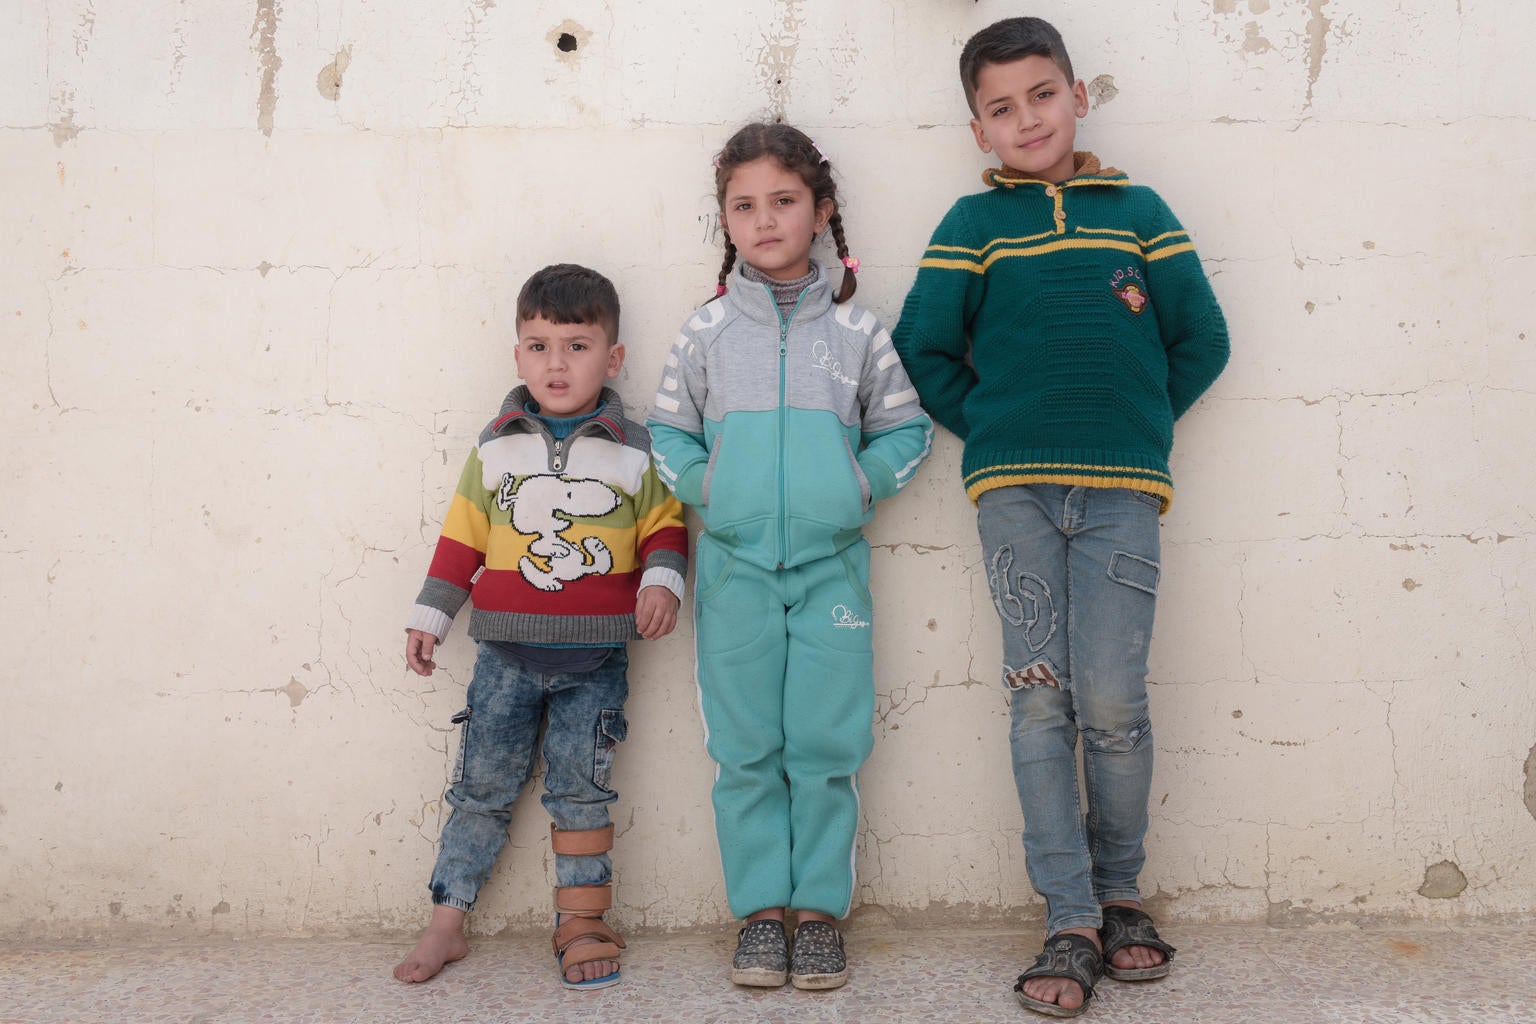 Children in Syria 